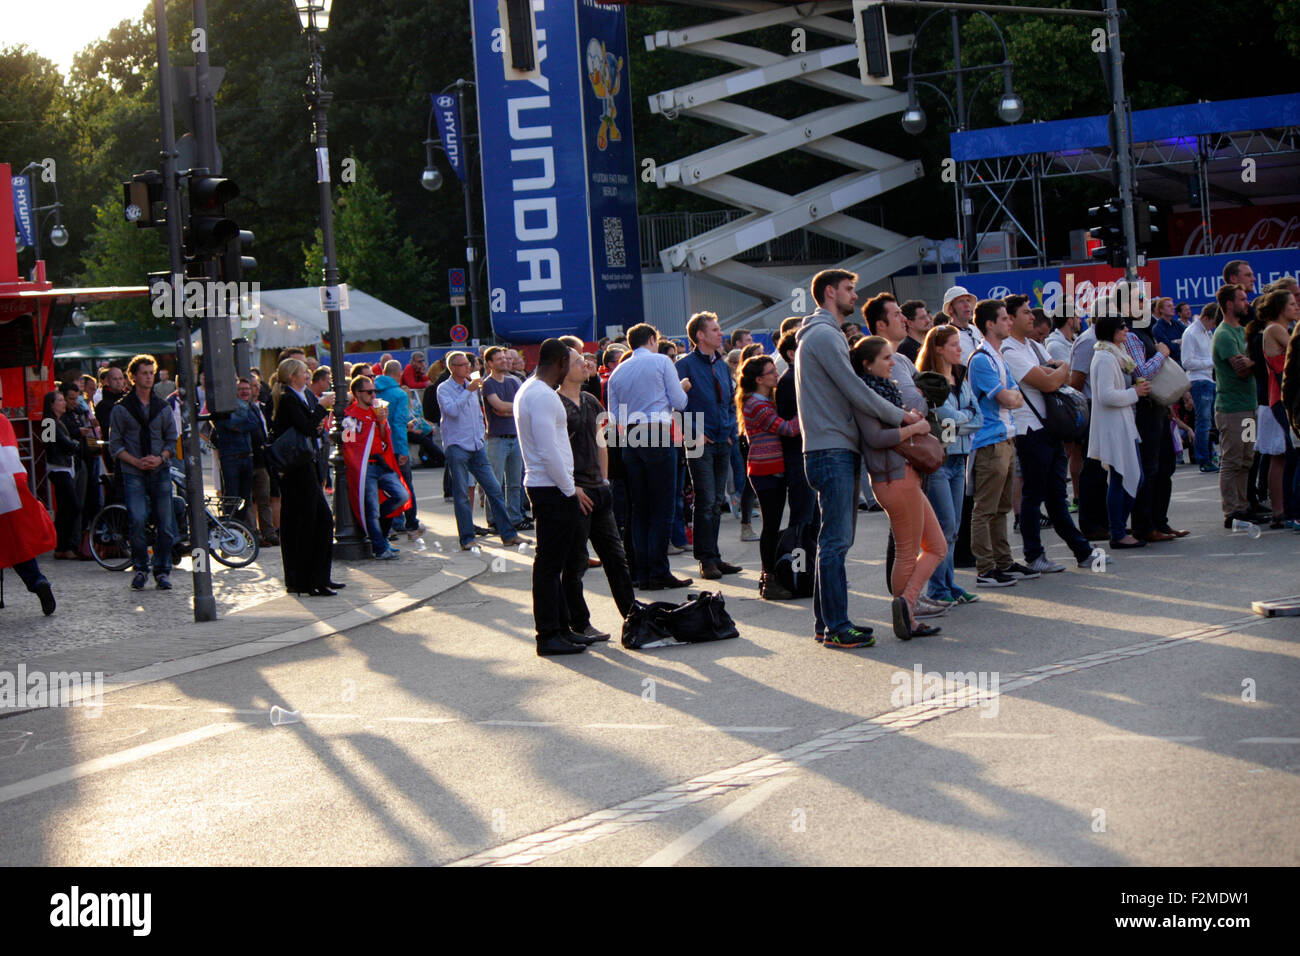 Impressionen von der Fanmeile am Brandenburger Tor beim Spiel Schweiz gegen Argentinien, 1. Juli 2014, Berlin. Stock Photo